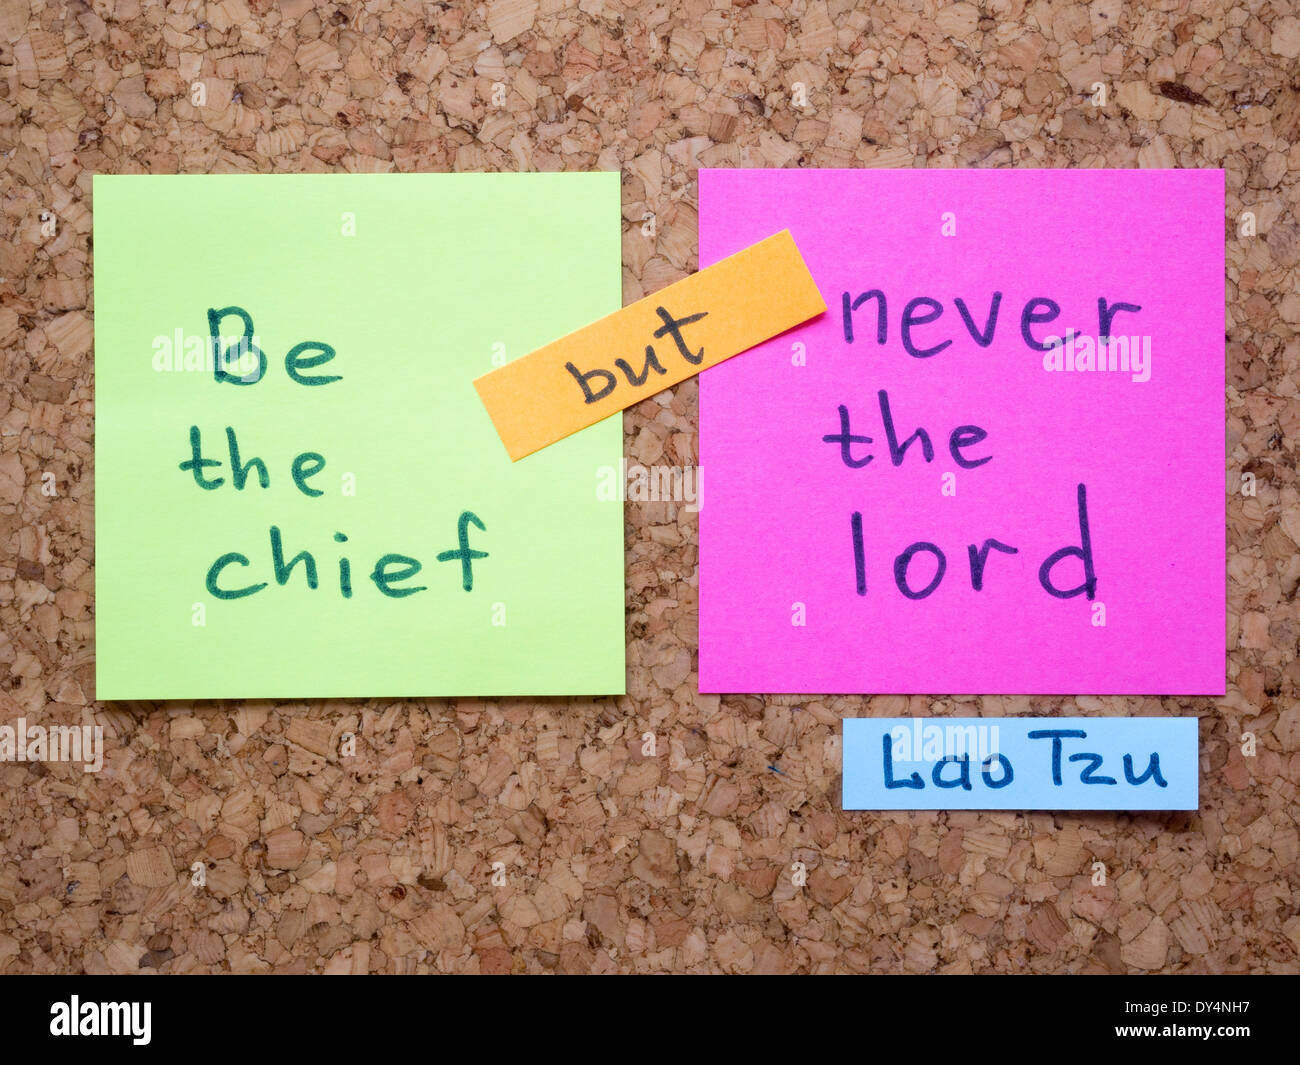 Célèbre citation de Lao-tseu avec interprétation notes autocollant sur le panneau de liège Banque D'Images